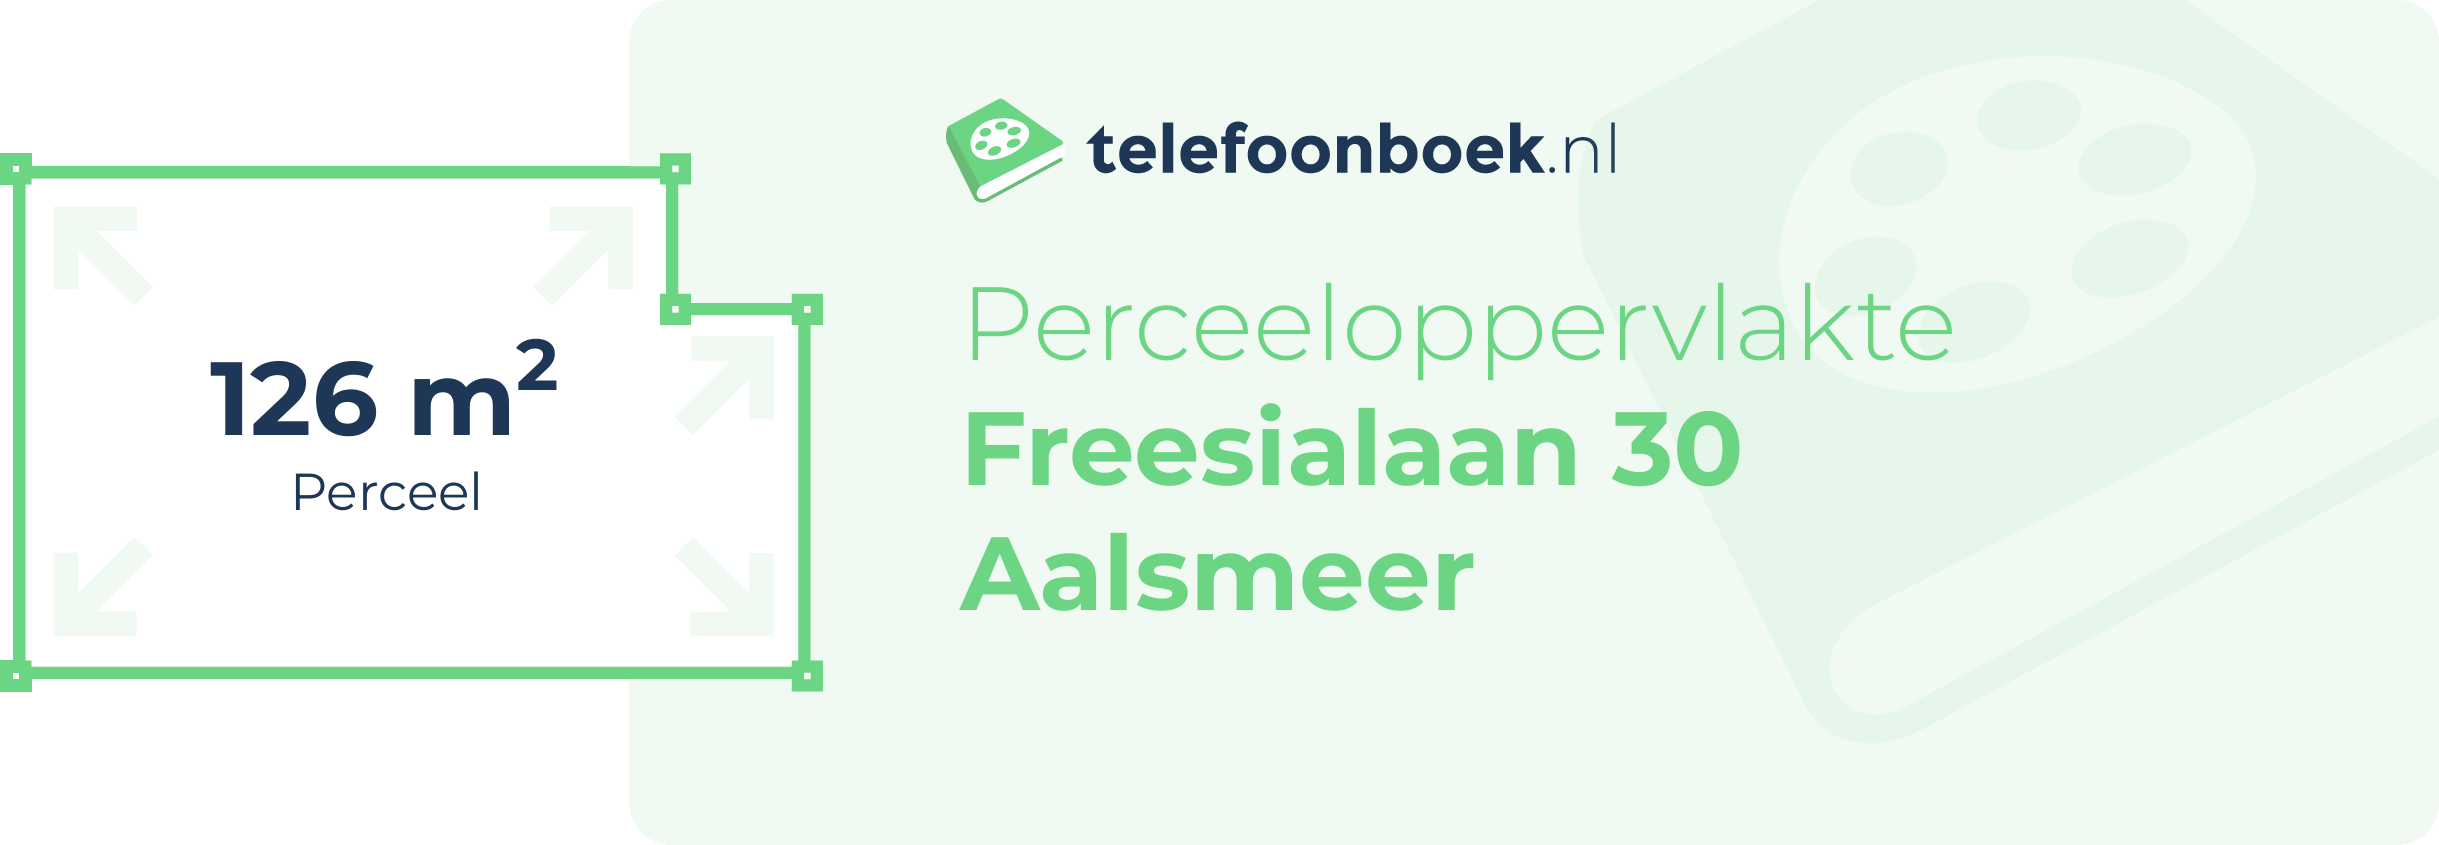 Perceeloppervlakte Freesialaan 30 Aalsmeer